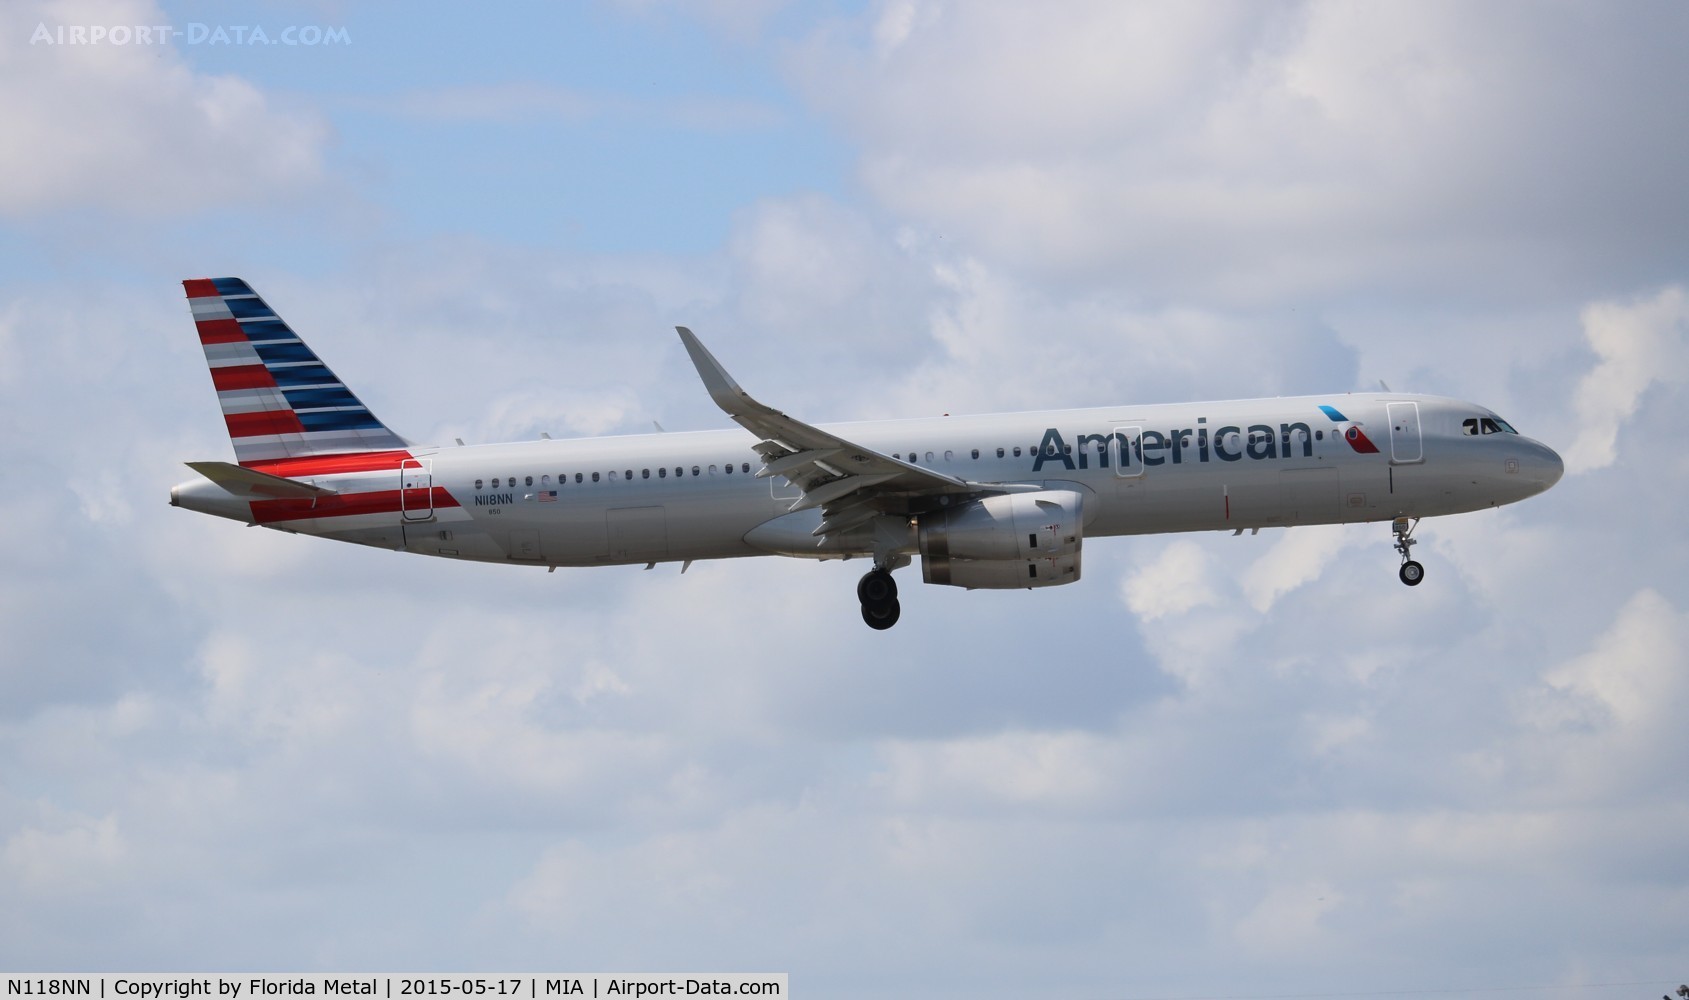 N118NN, 2014 Airbus A321-231 C/N 6162, American